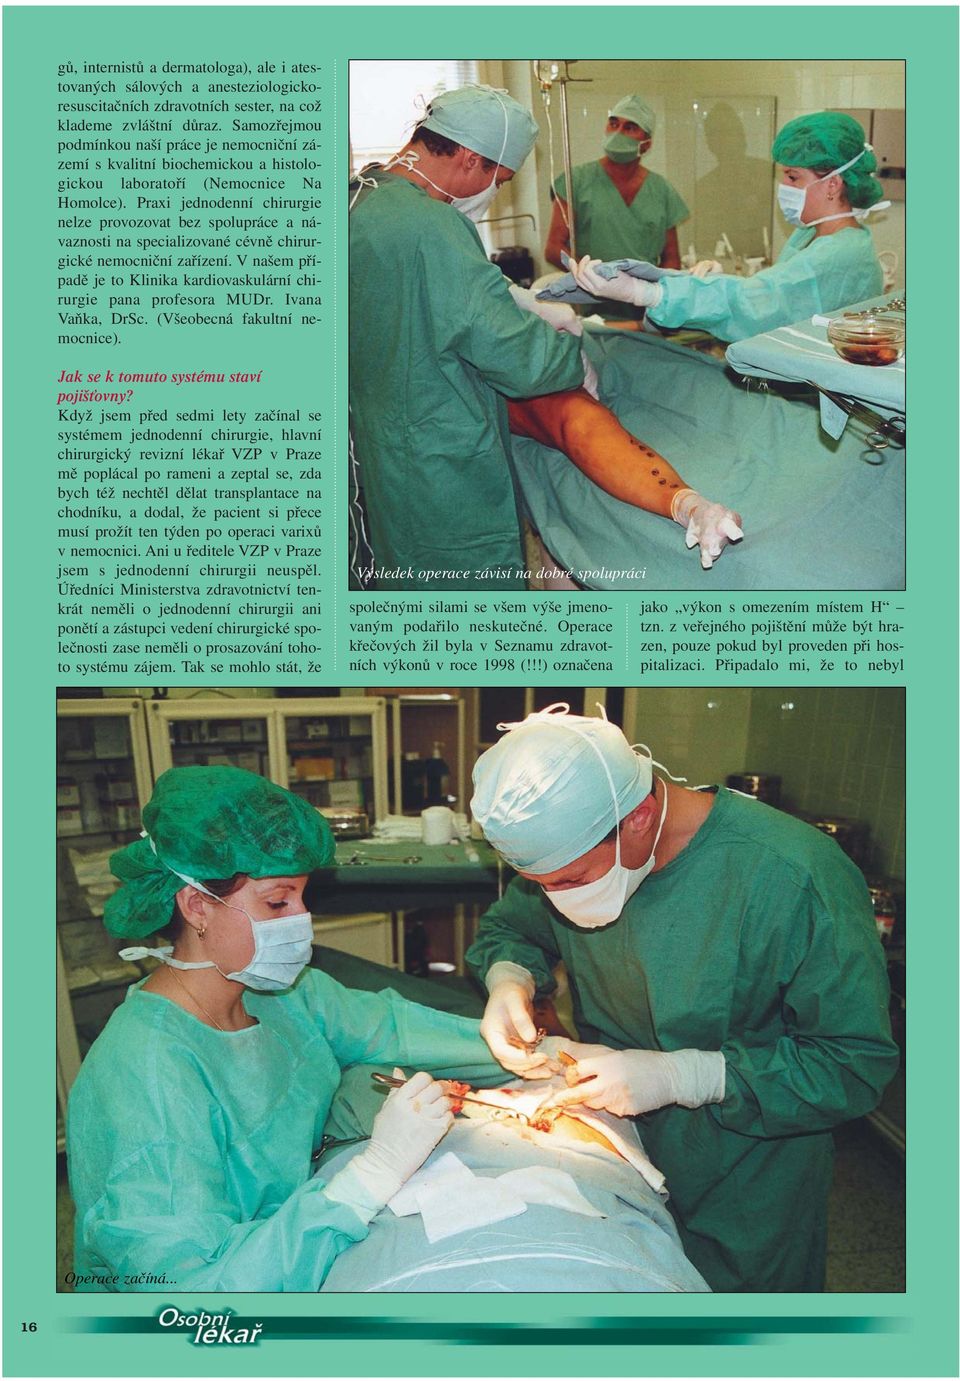 Praxi jednodenní chirurgie nelze provozovat bez spolupráce a návaznosti na specializované cévně chirurgické nemocniční zařízení.